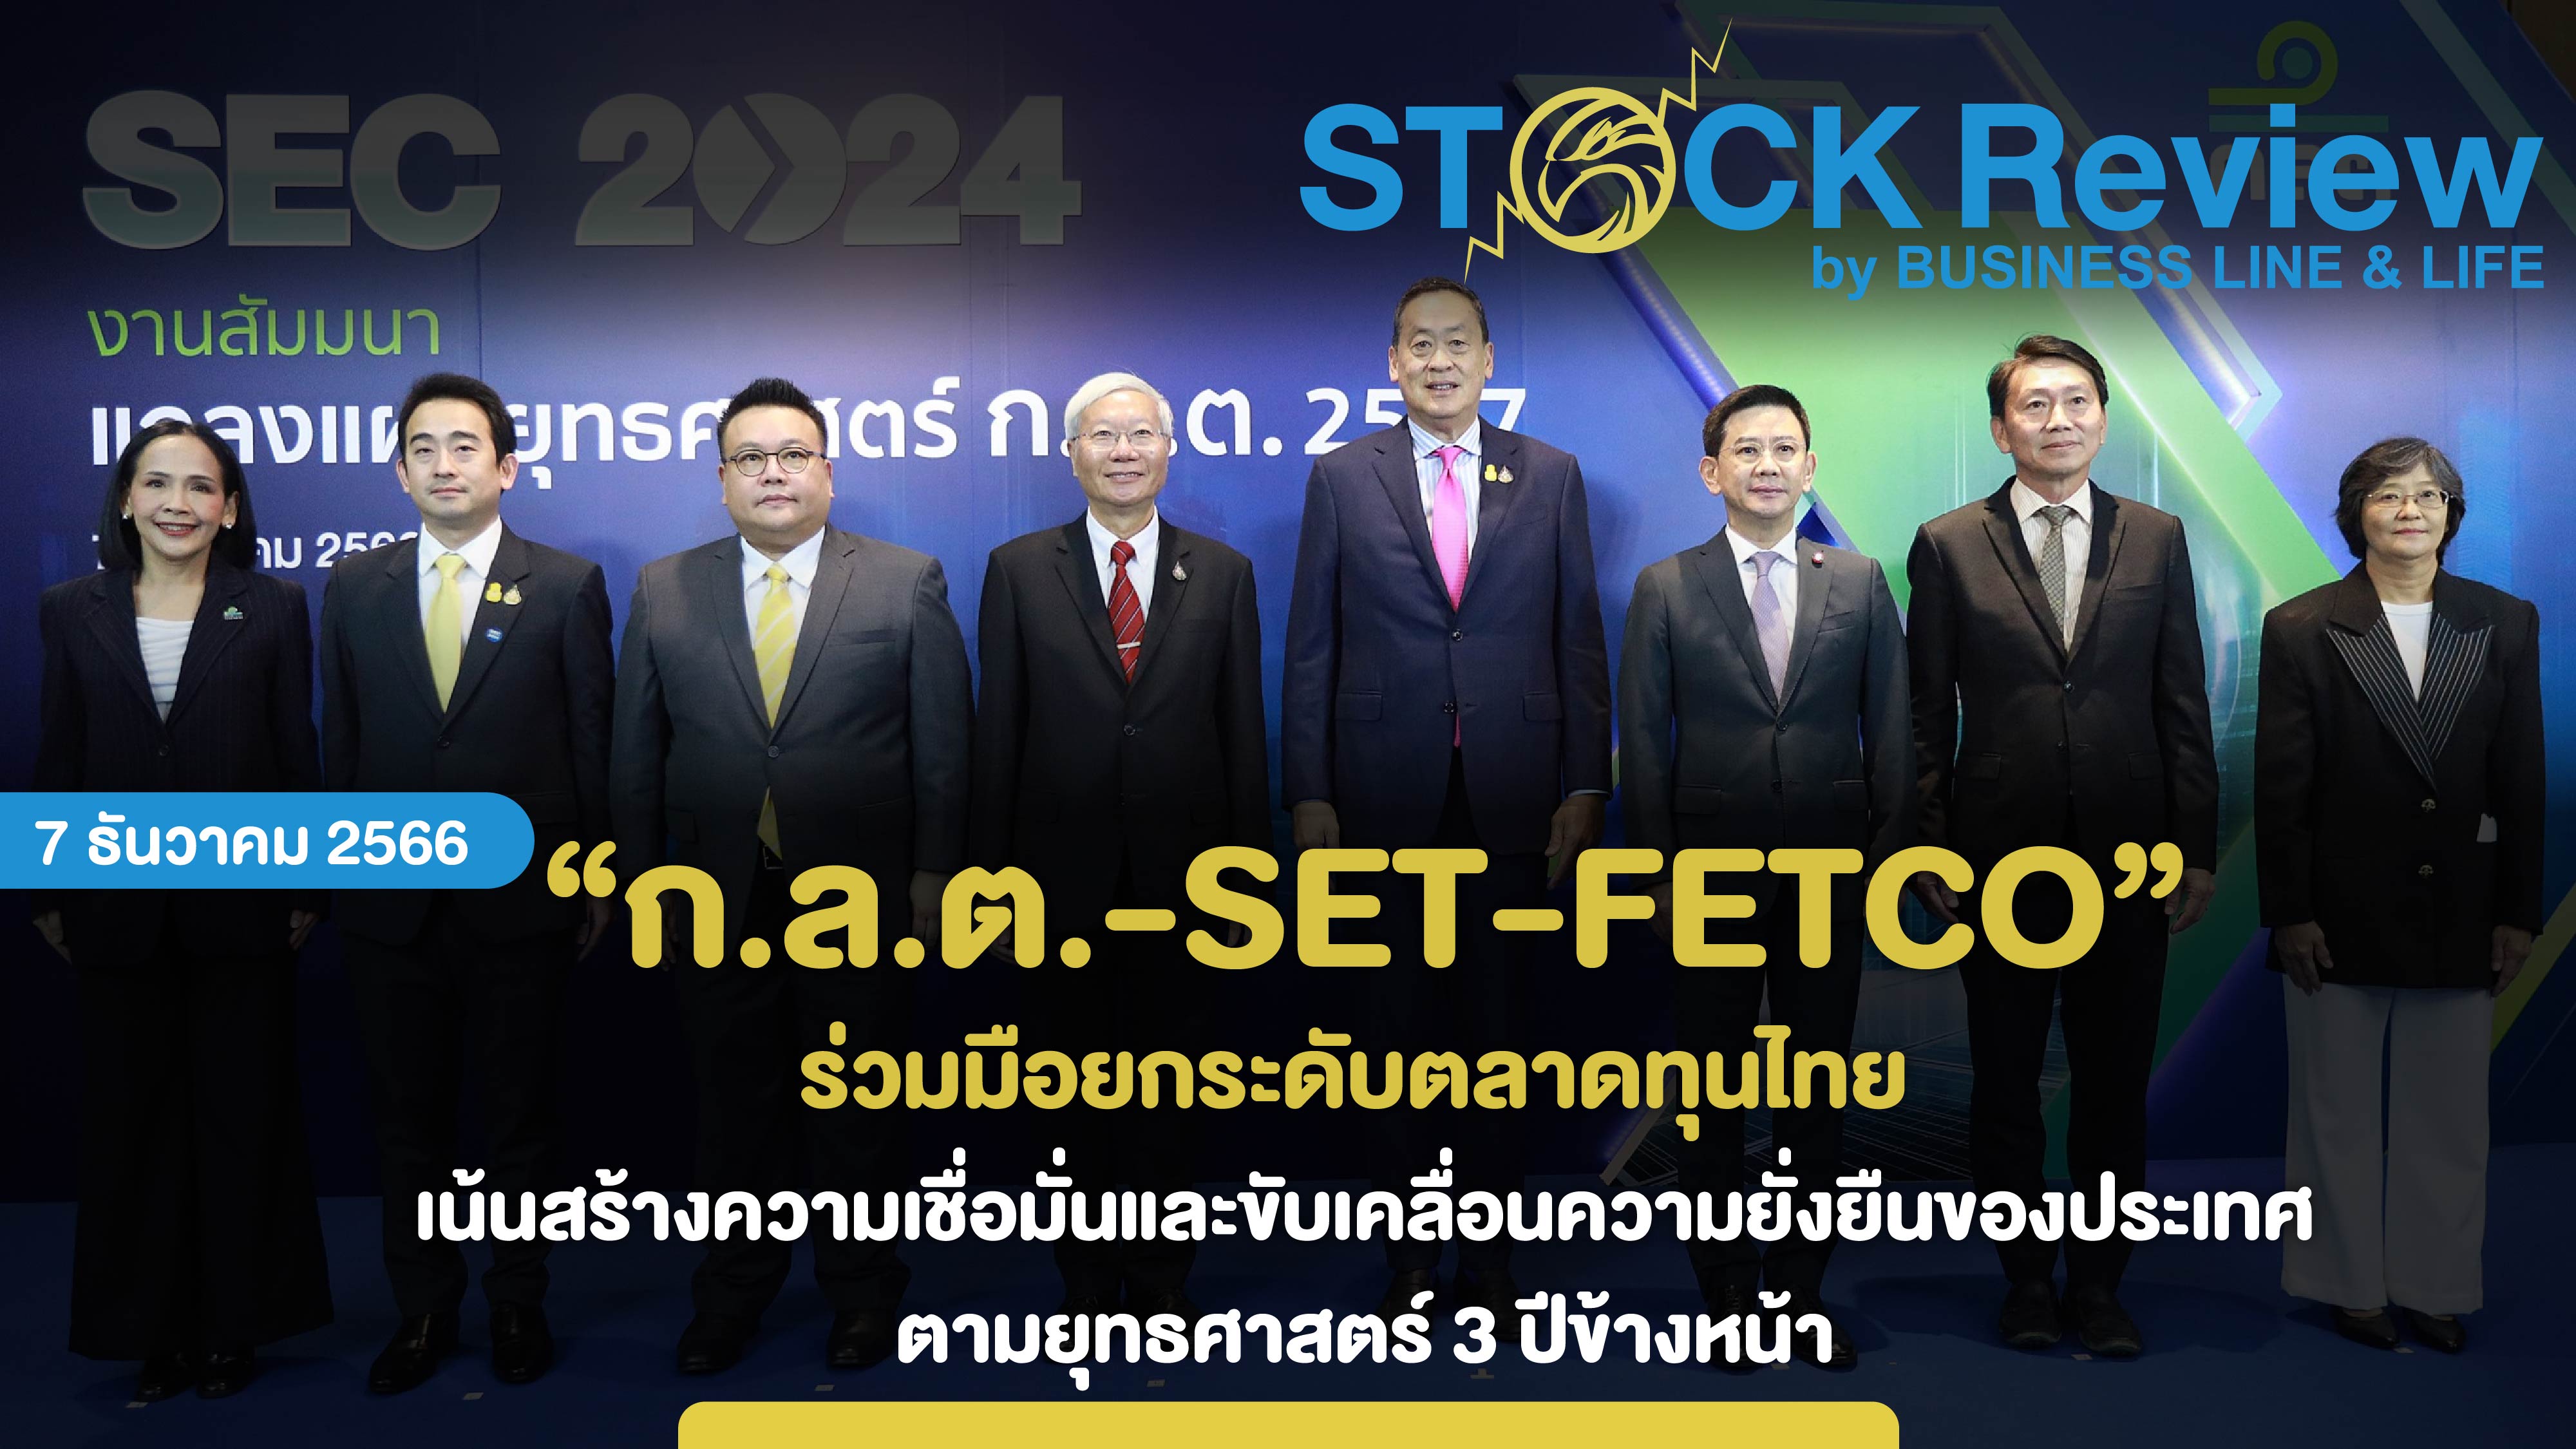 ก.ล.ต. - SET - FETCO ร่วมมือยกระดับตลาดทุนไทย เน้นสร้างความเชื่อมั่นและขับเคลื่อนความยั่งยืนของประเทศ ตามยุทธศาสตร์ 3 ปีข้างหน้า